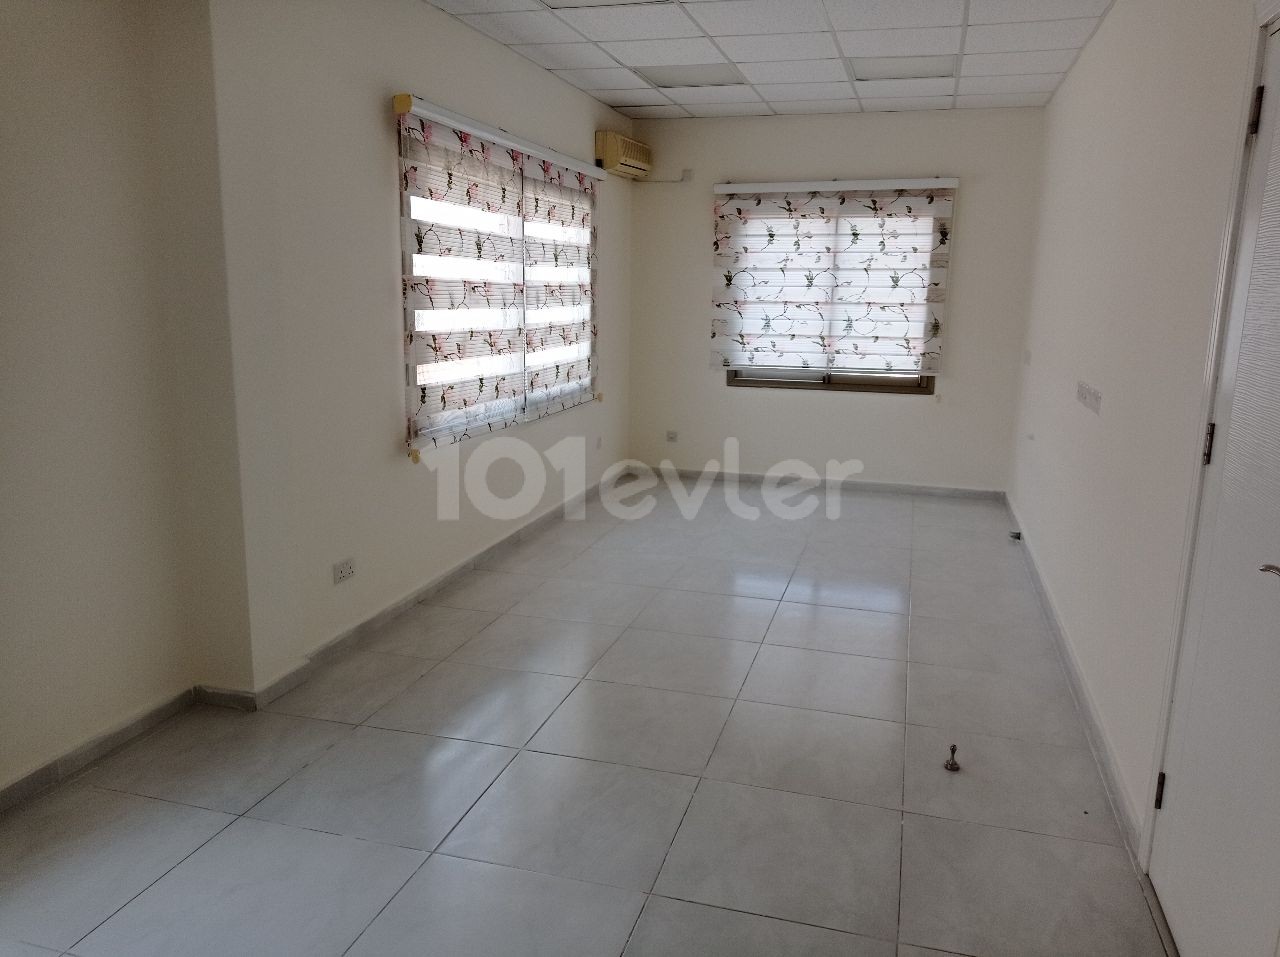 2+1 Semi-furnished apartment in Kucukkaymakli district ** 